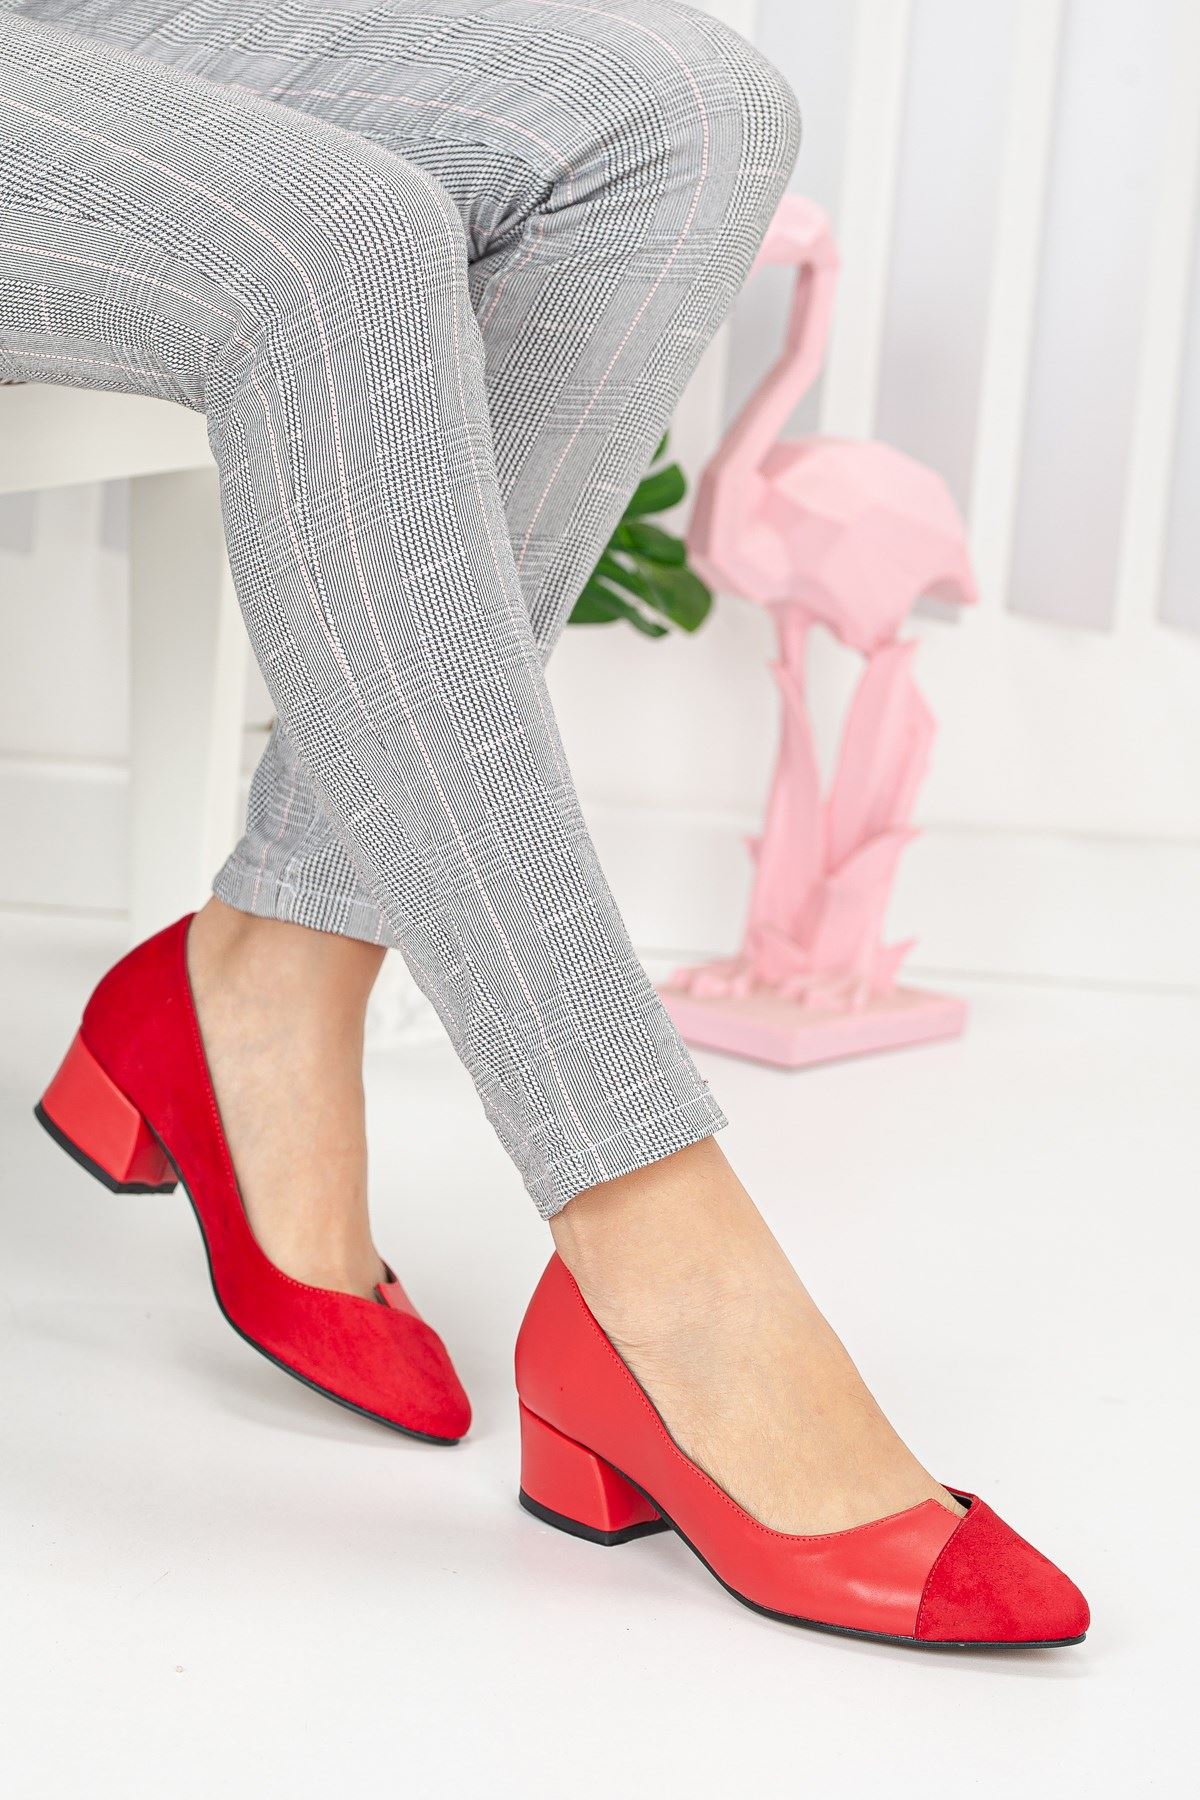 Alex Kırmızı Cilt-Süet Topuklu Ayakkabı